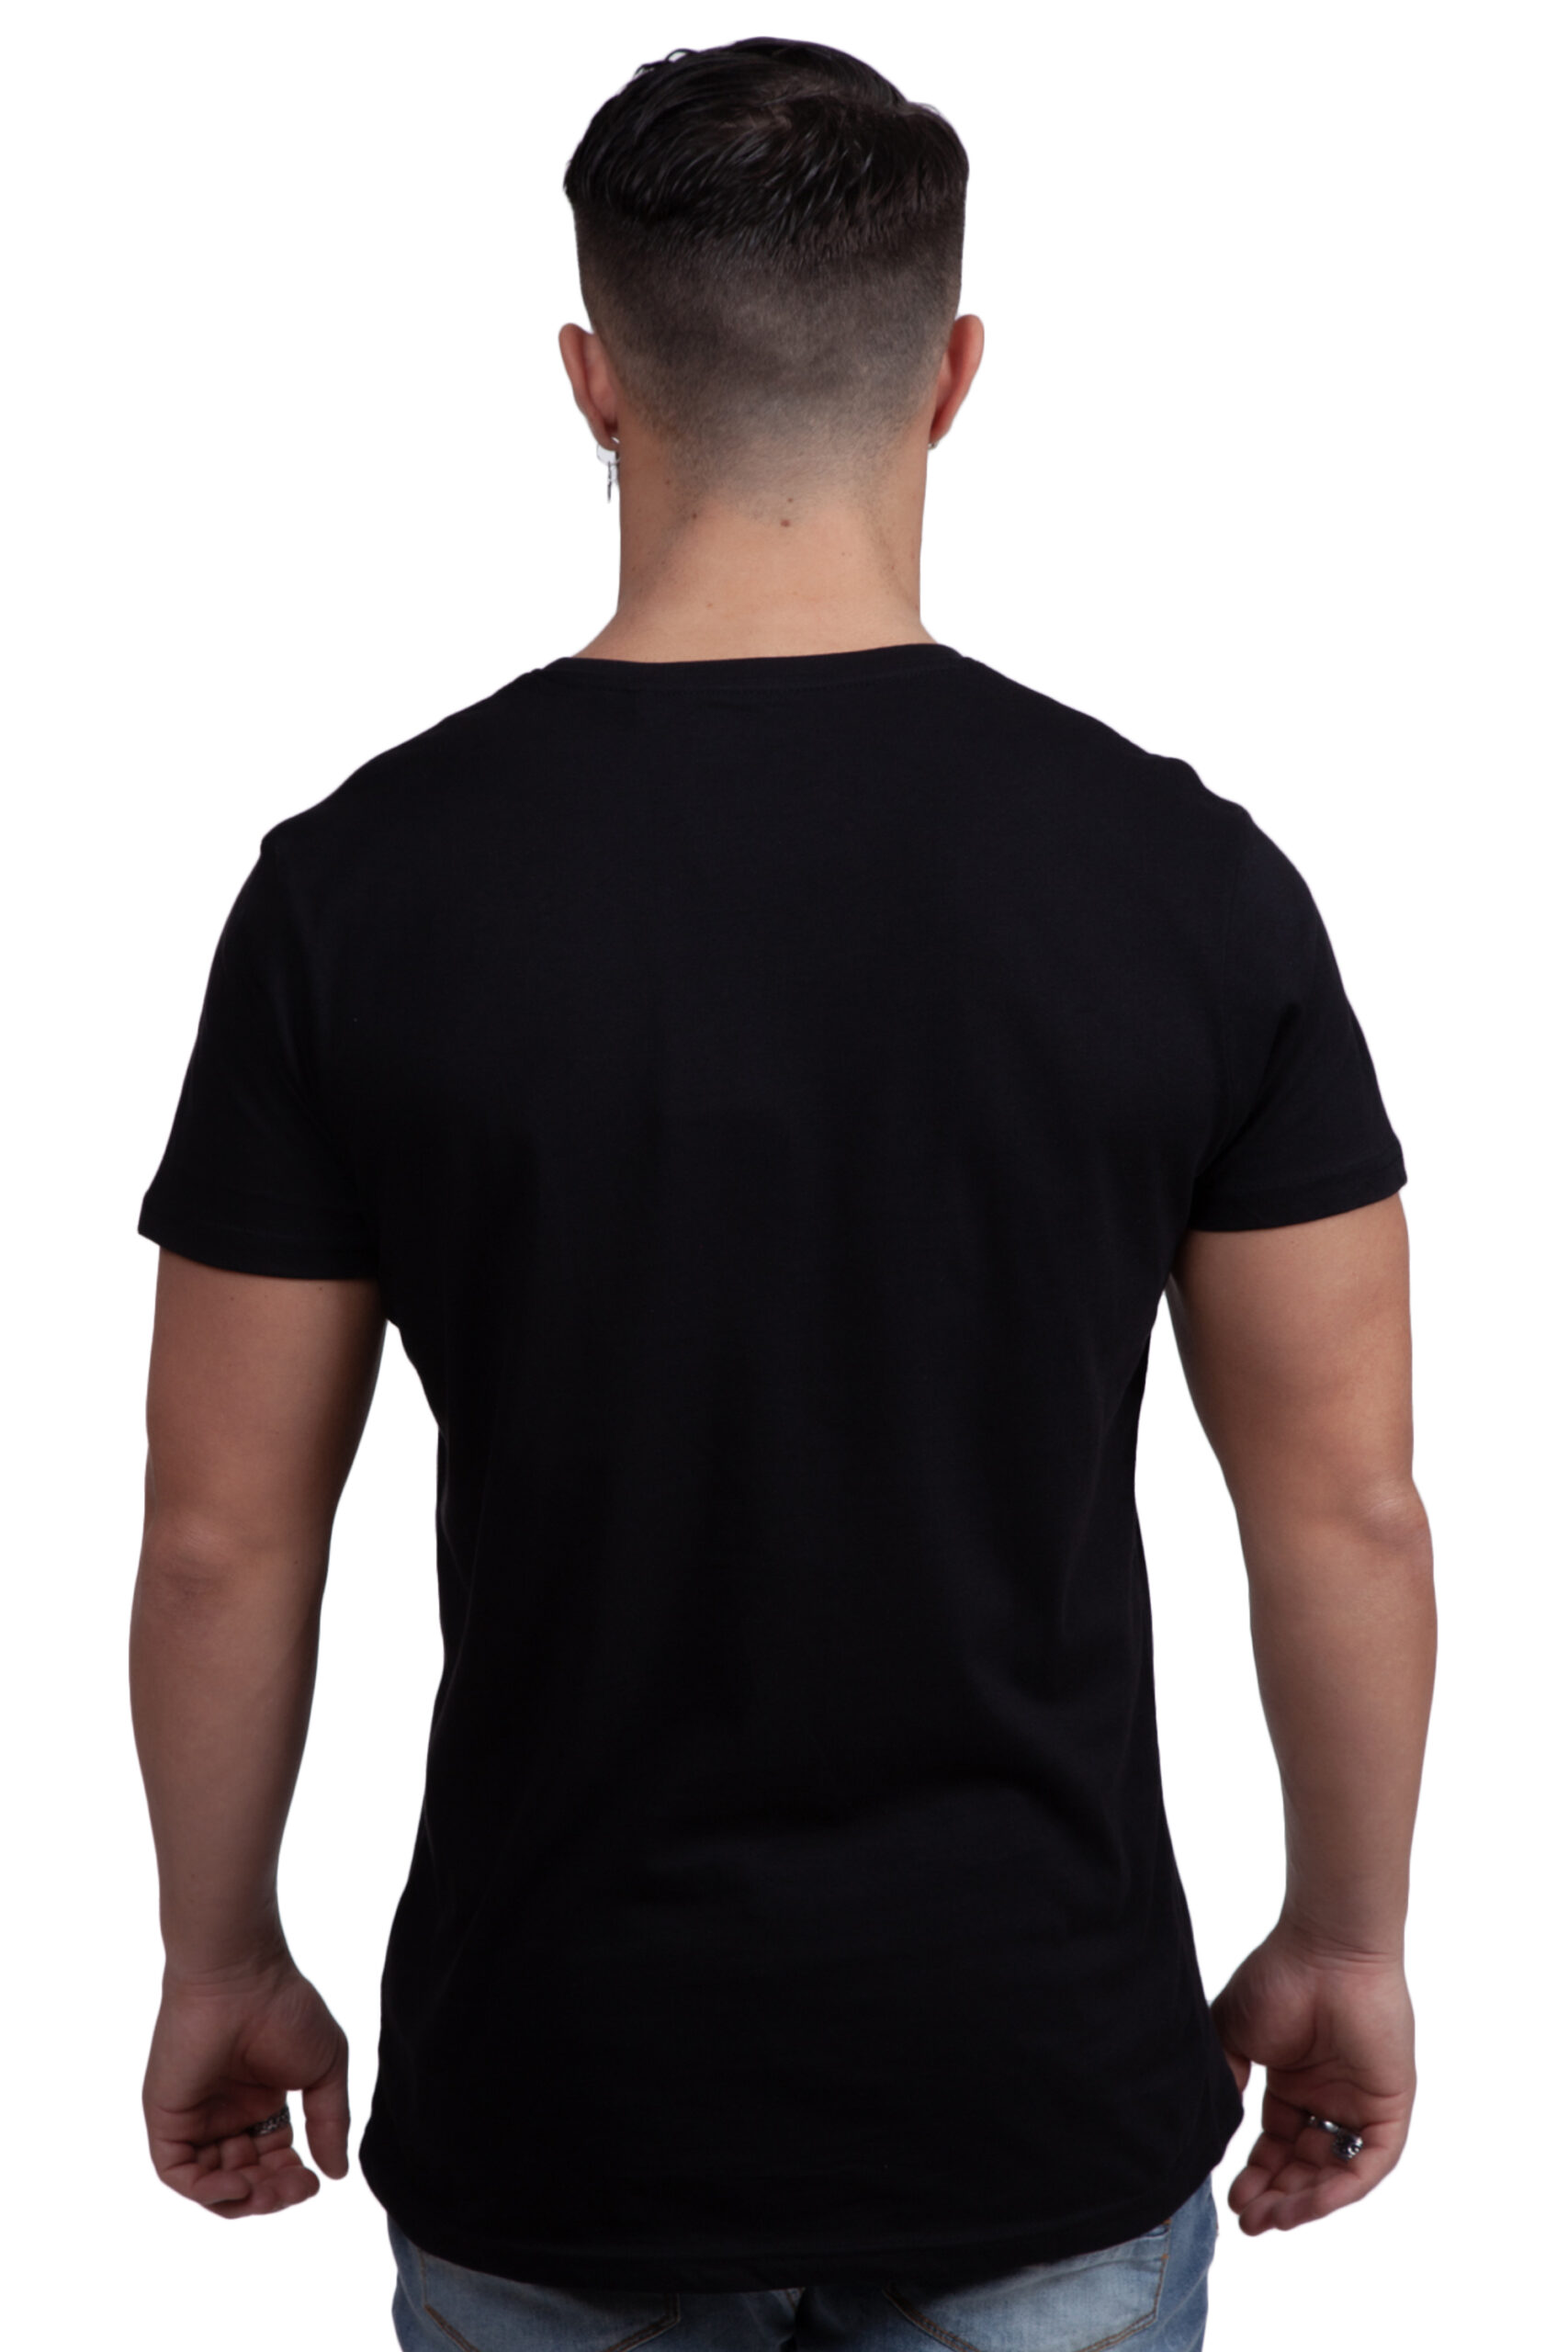 Kingsmaker T-Shirt - Twisted Soul | Men's Clothing